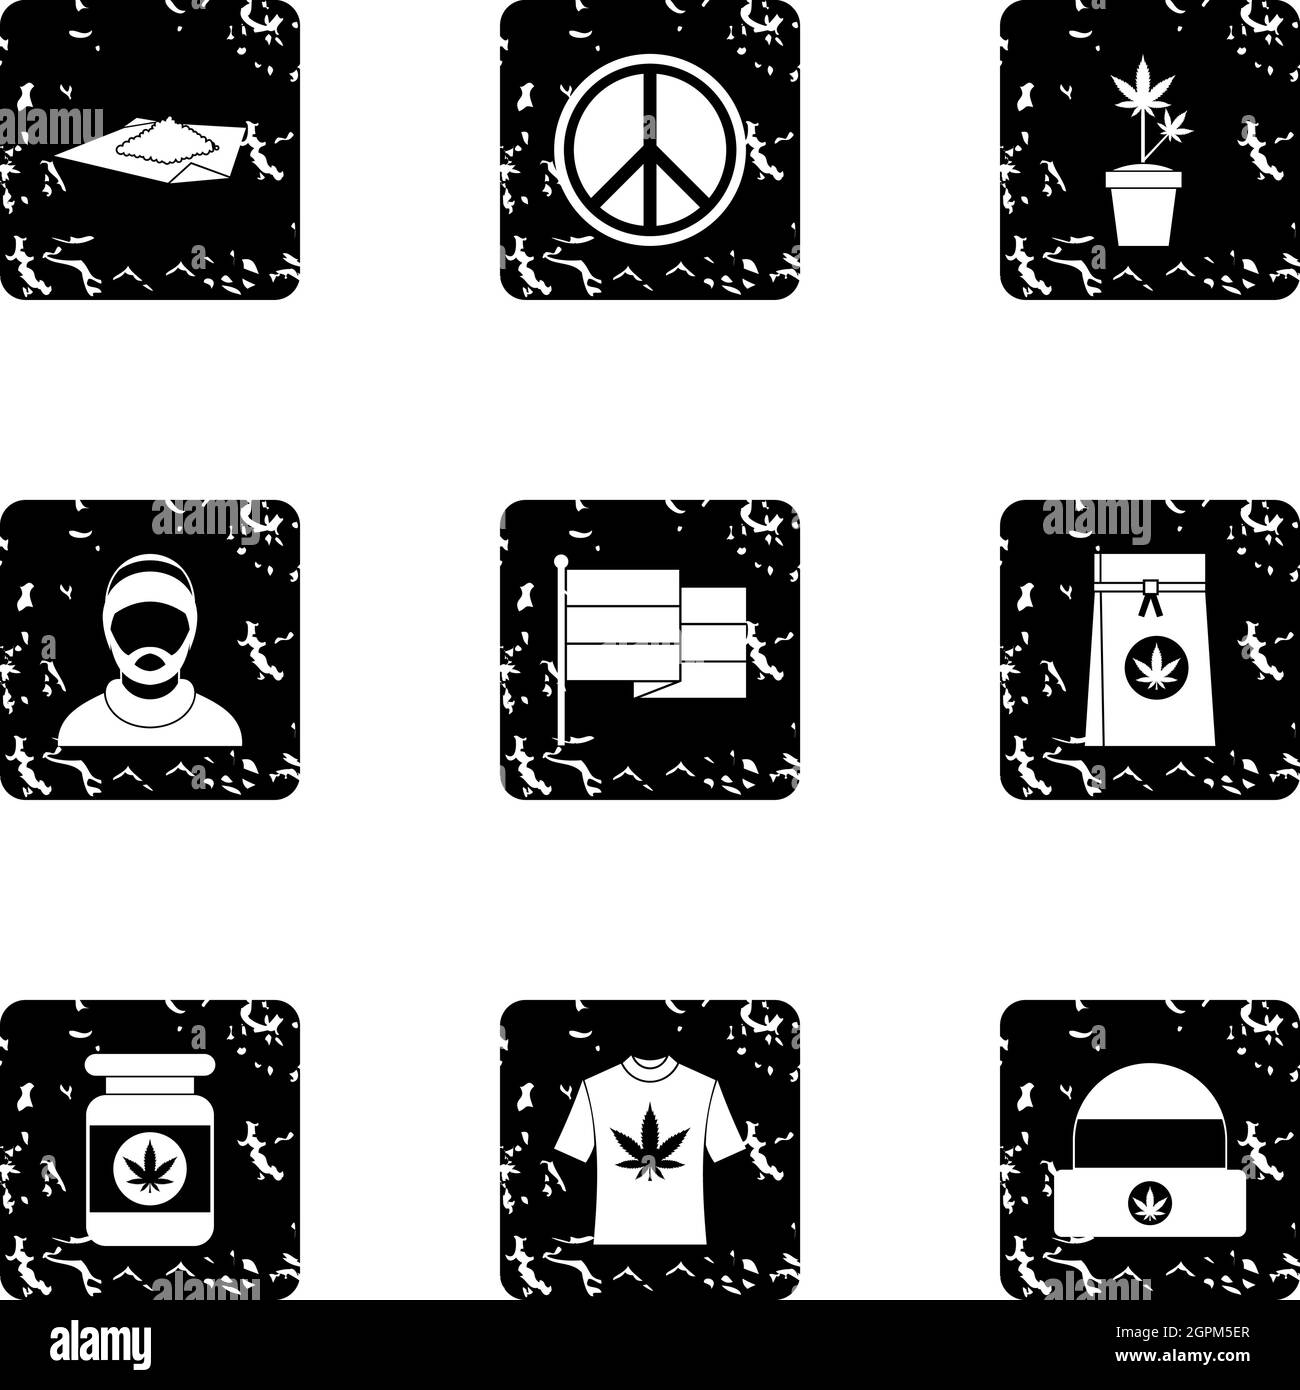 Hashish icons set, grunge style Stock Vector